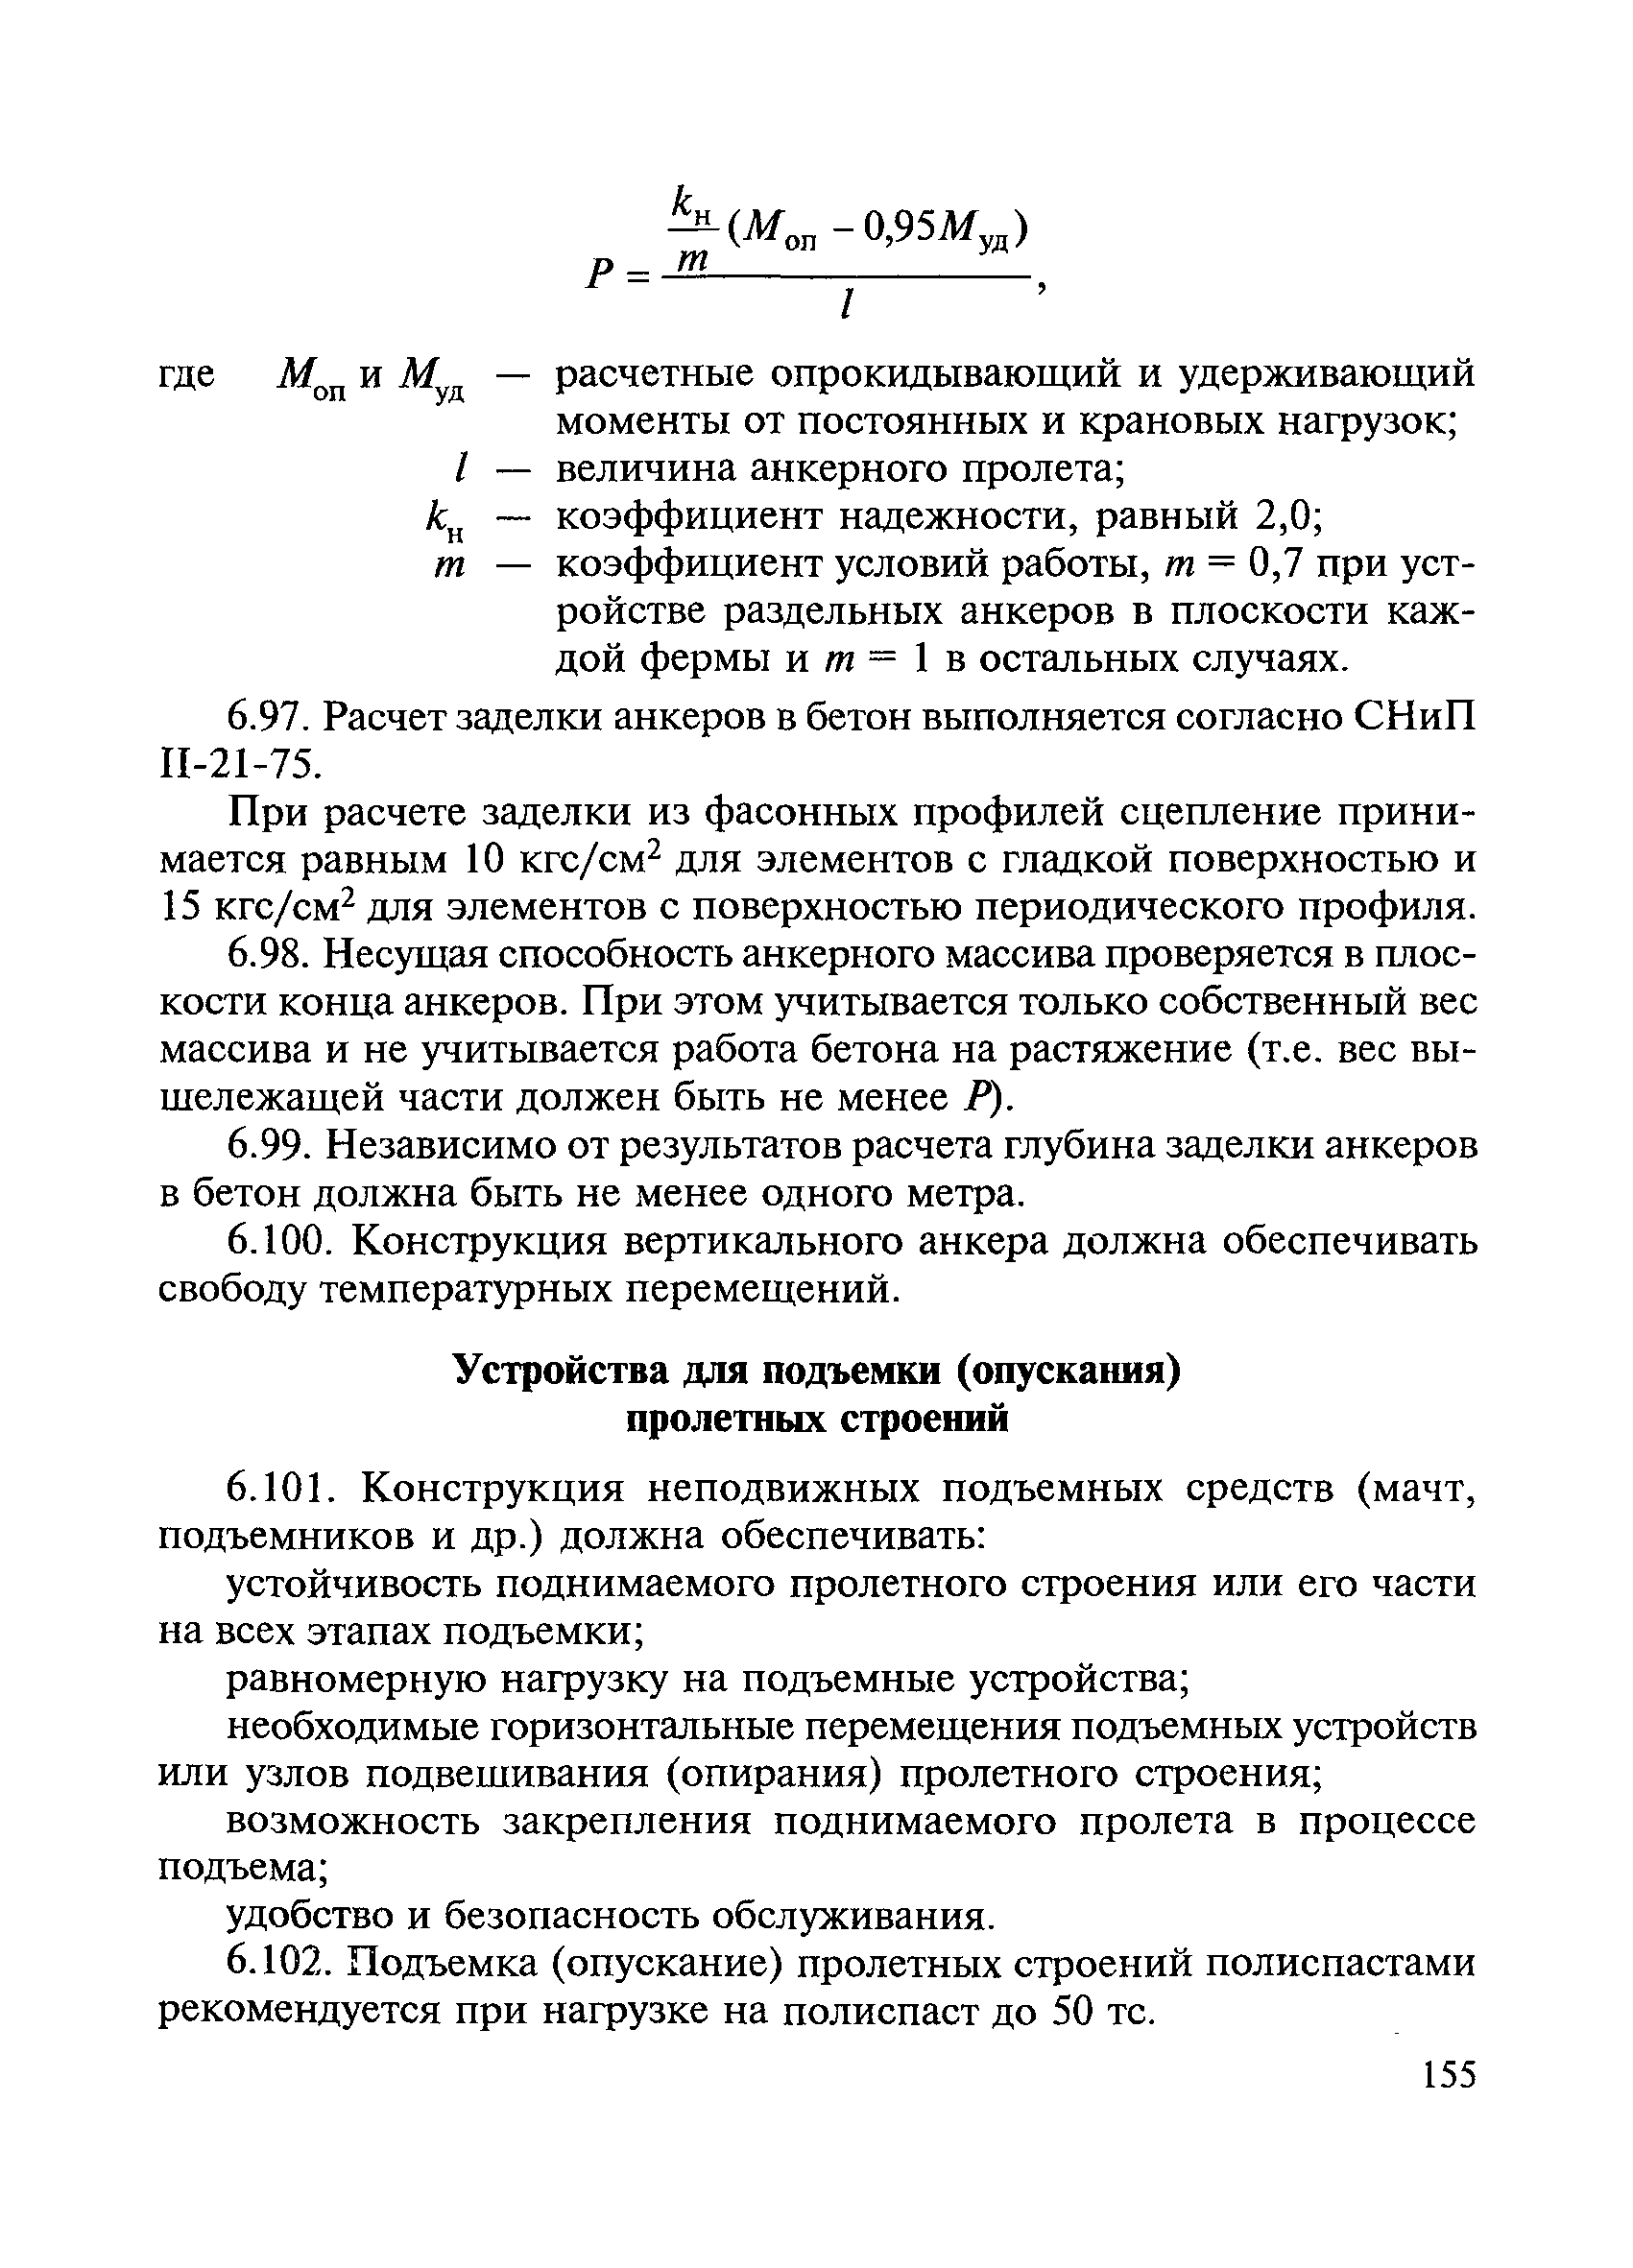 ВСН 136-78/Минтрансстрой